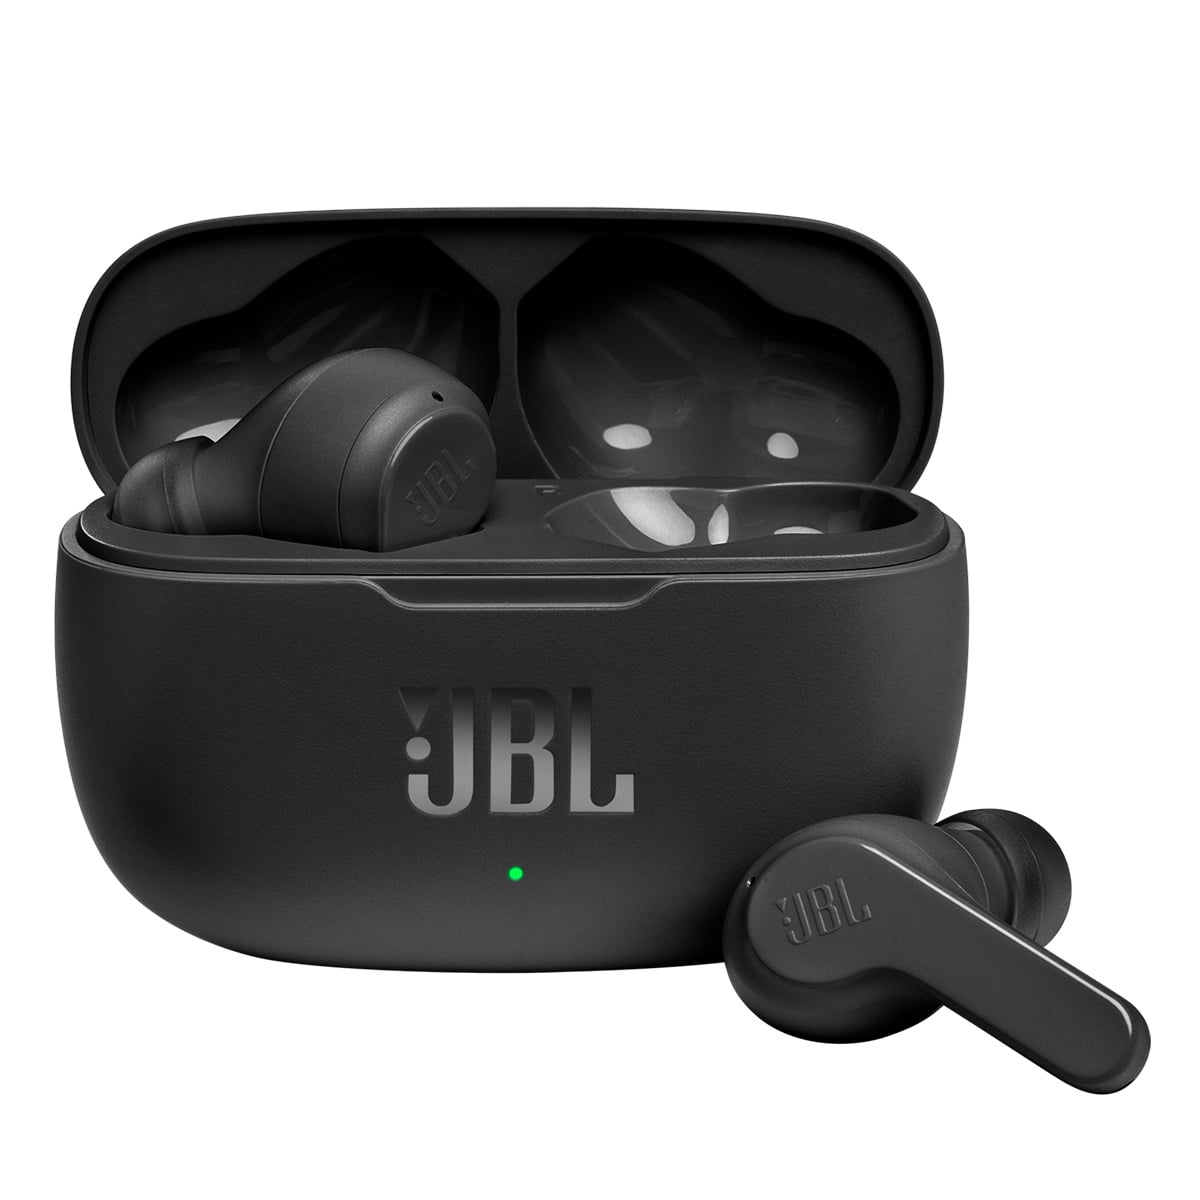 Details about   NEW JBL JBLW100TWS Complete Wireless Earphone Bluetooth Waterproof IPX2 